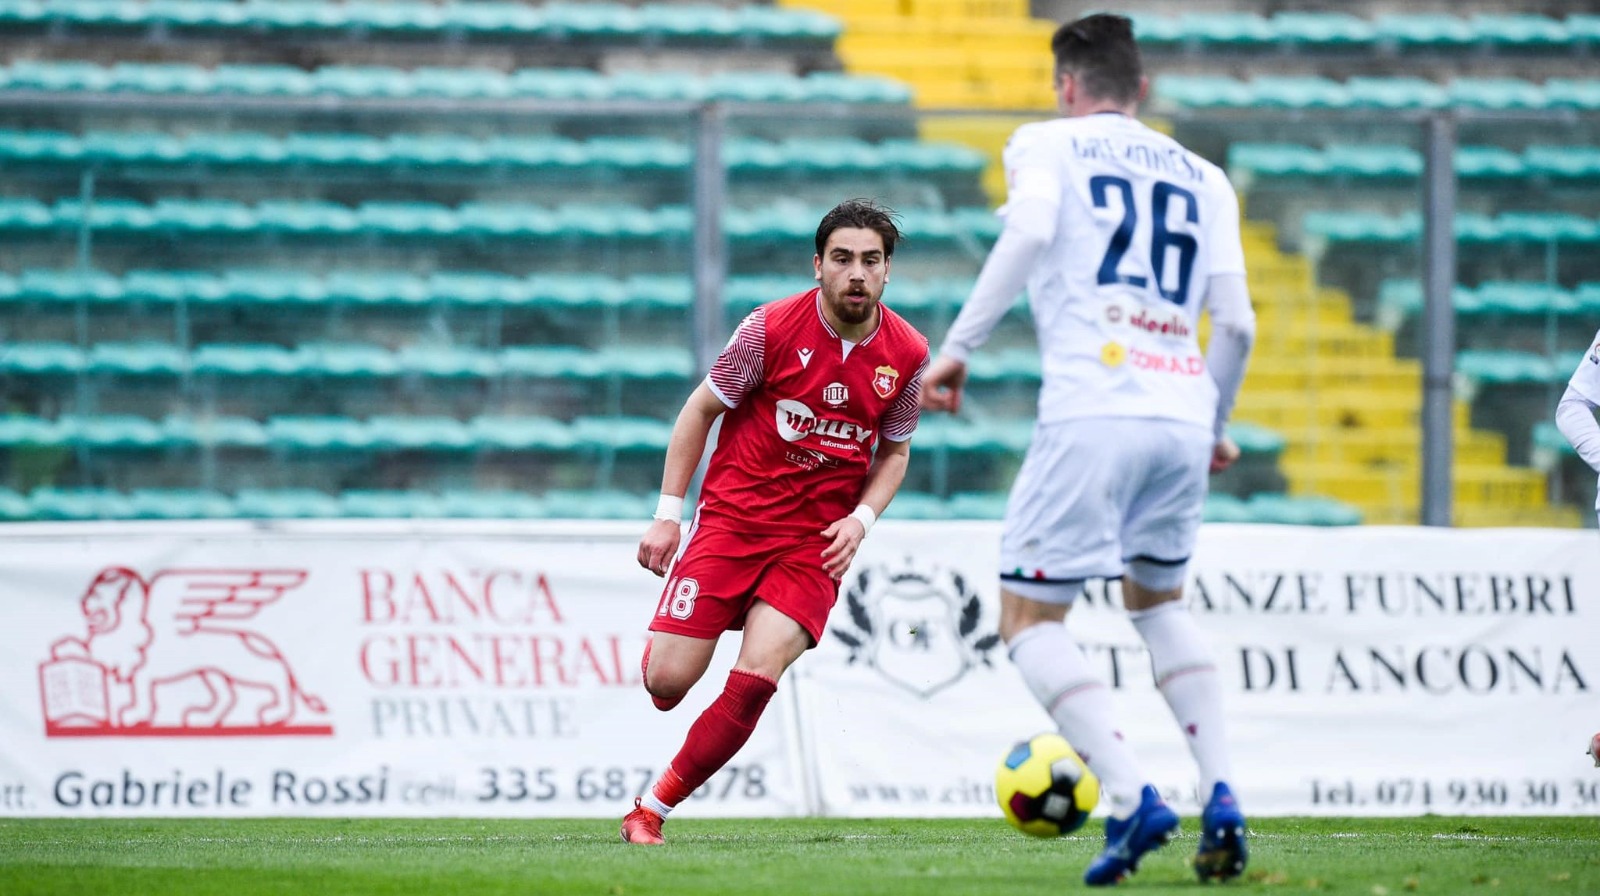 Serie C, un turno di squalifica a Gavazzi e Ferrini della Vis e Faggioli dell’Ancona Matelica